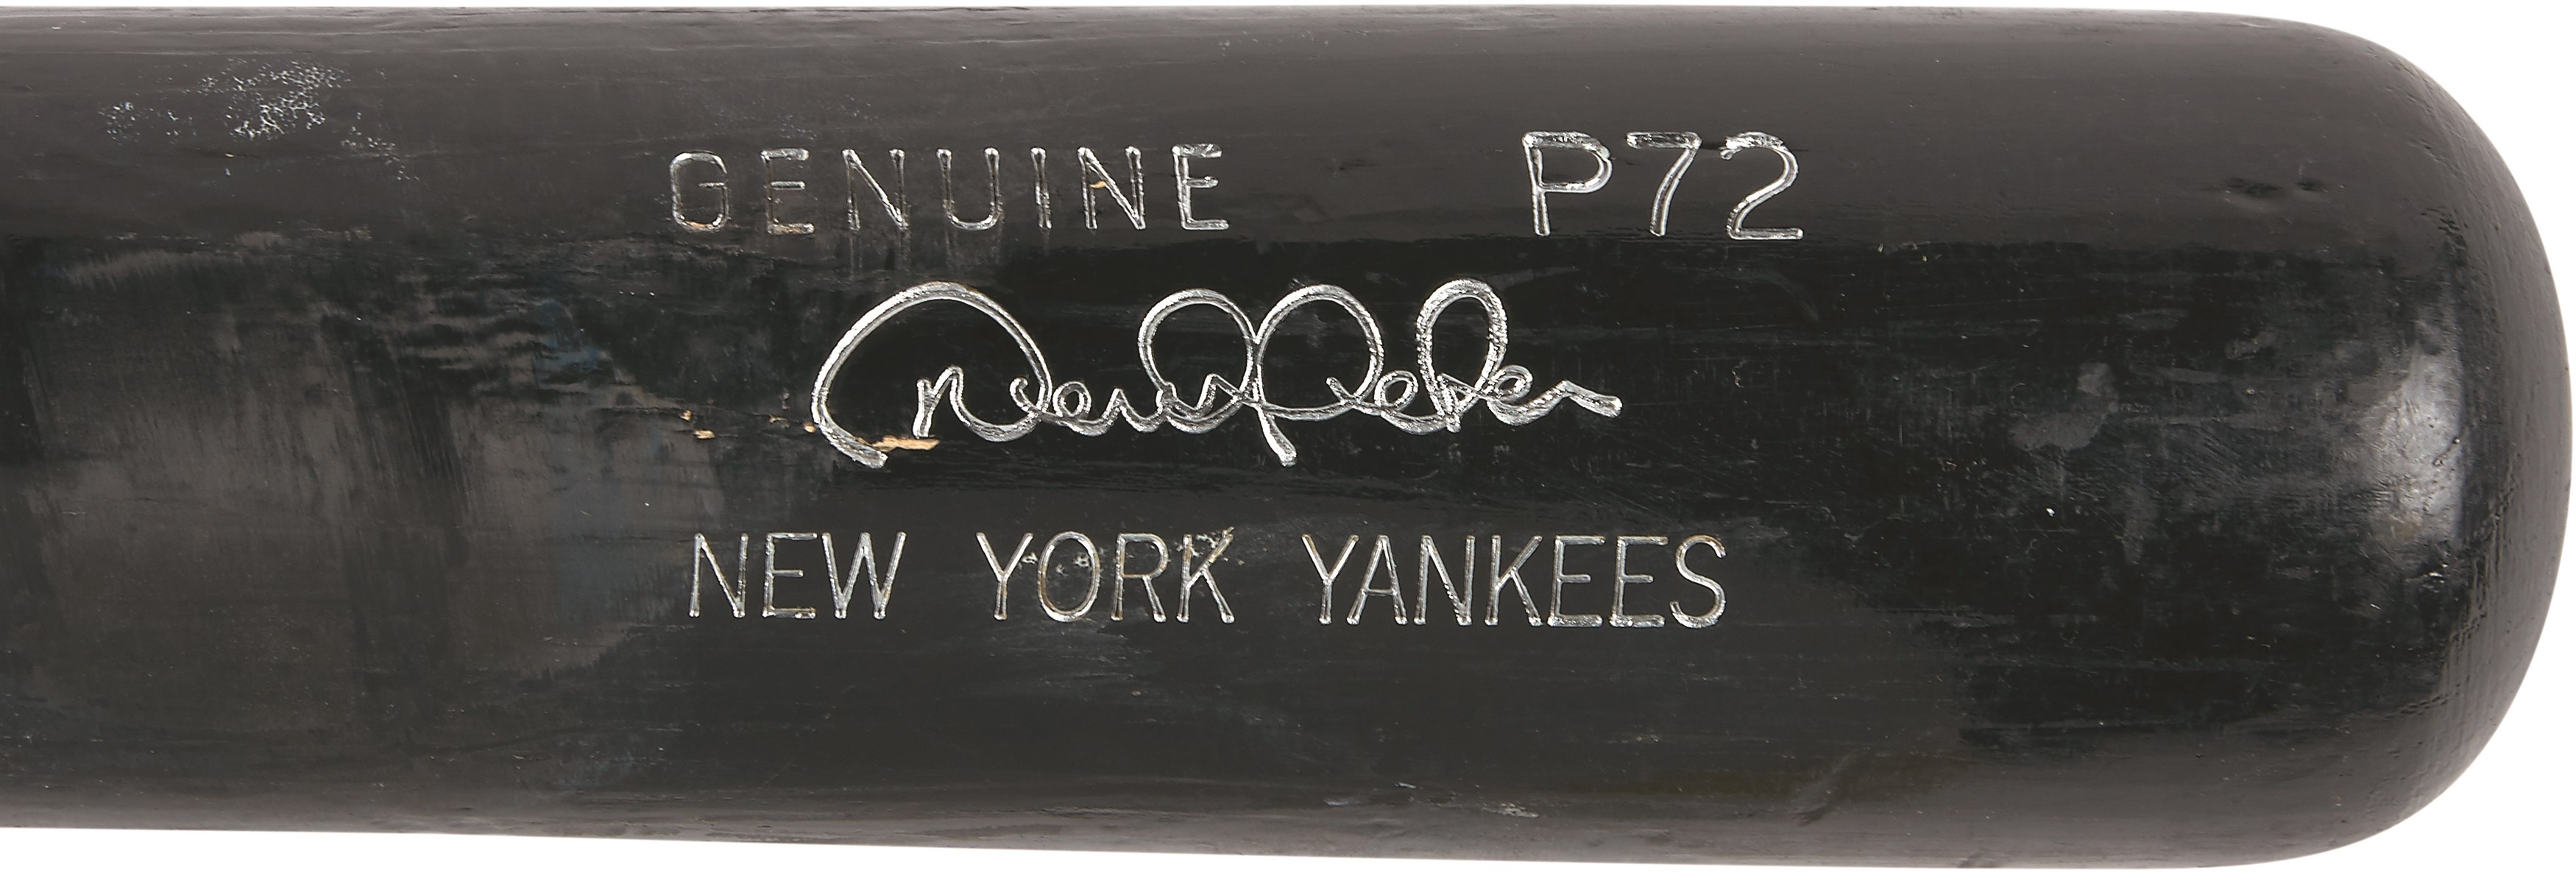 NY Yankees, Giants & Mets - 2003-07 Derek Jeter Game Used Yankees Bat (PSA GU 8)